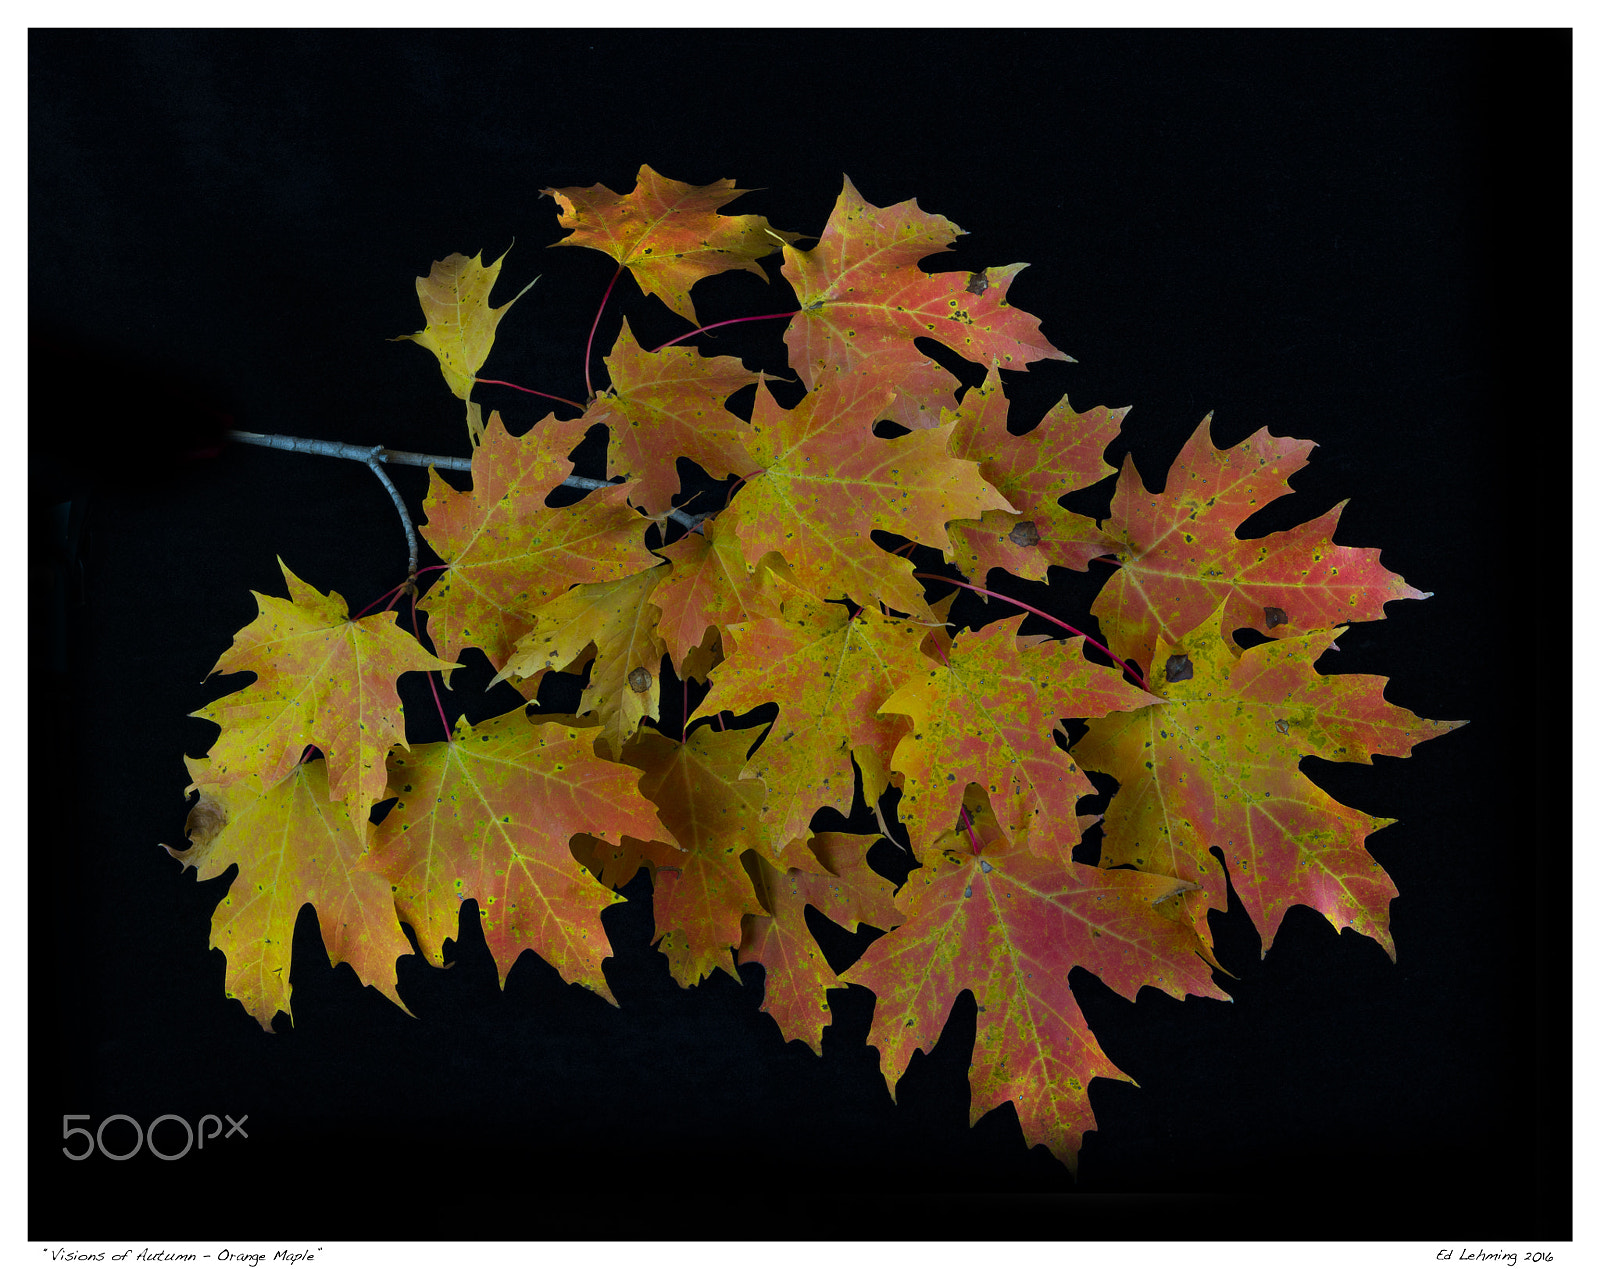 AF Zoom-Nikkor 28-70mm f/3.5-4.5D sample photo. Visions of autumn - orange maple photography